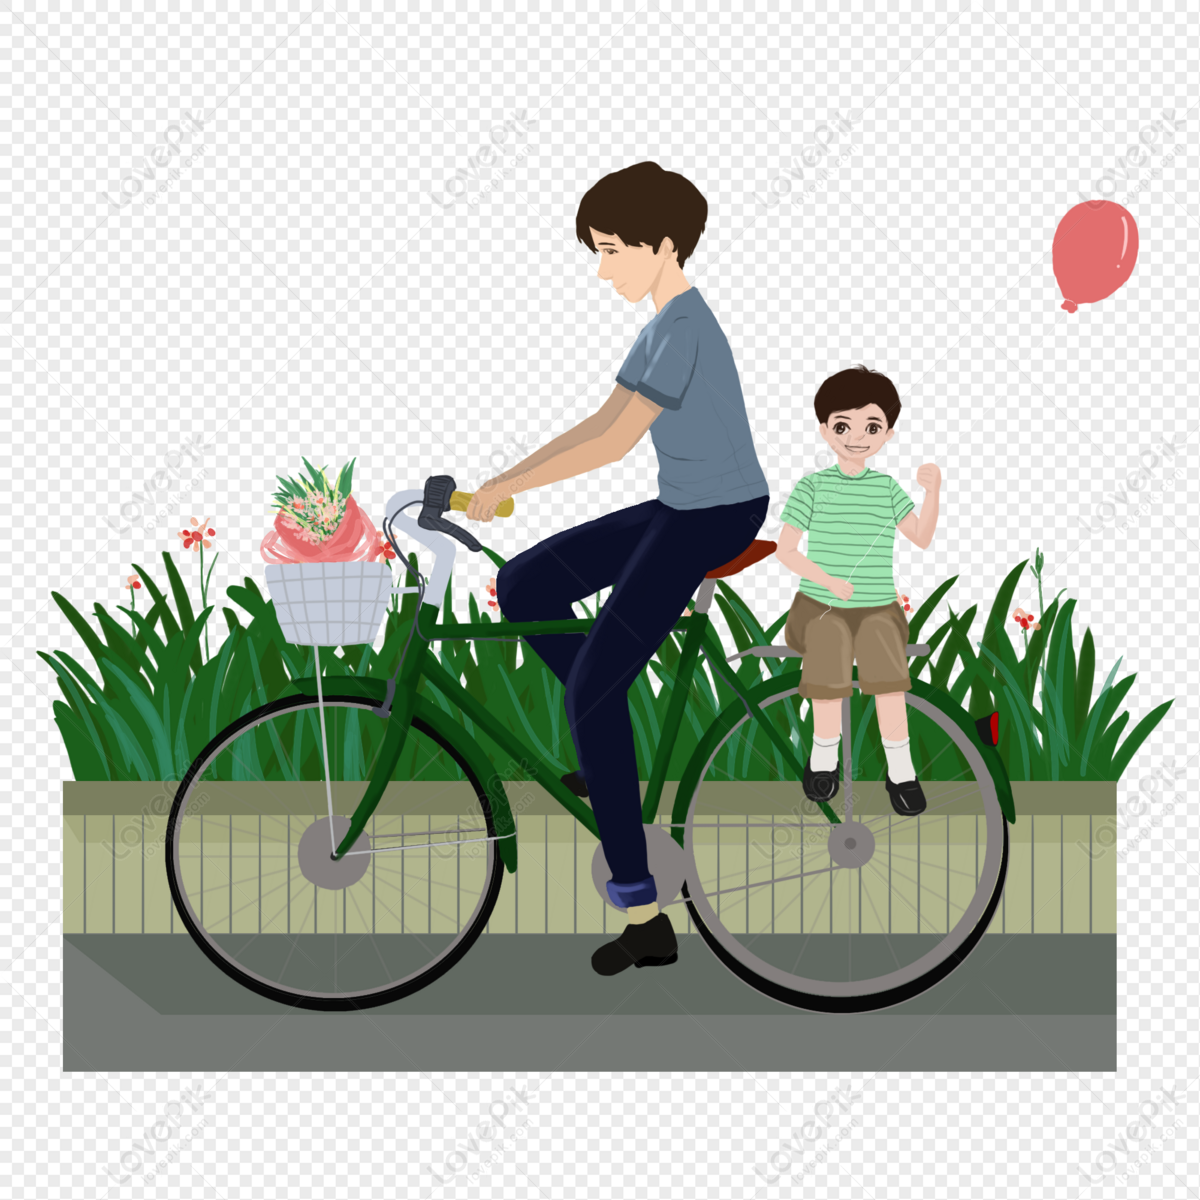 Hình ảnh Cha đi Xe đạp: Cha là người luôn đồng hành cùng chúng ta trong suốt cuộc đời. Hình ảnh cha đi xe đạp sẽ giúp bạn thấy được tình cảm thân thiết và sự hy sinh tuyệt vời của cha dành cho gia đình.